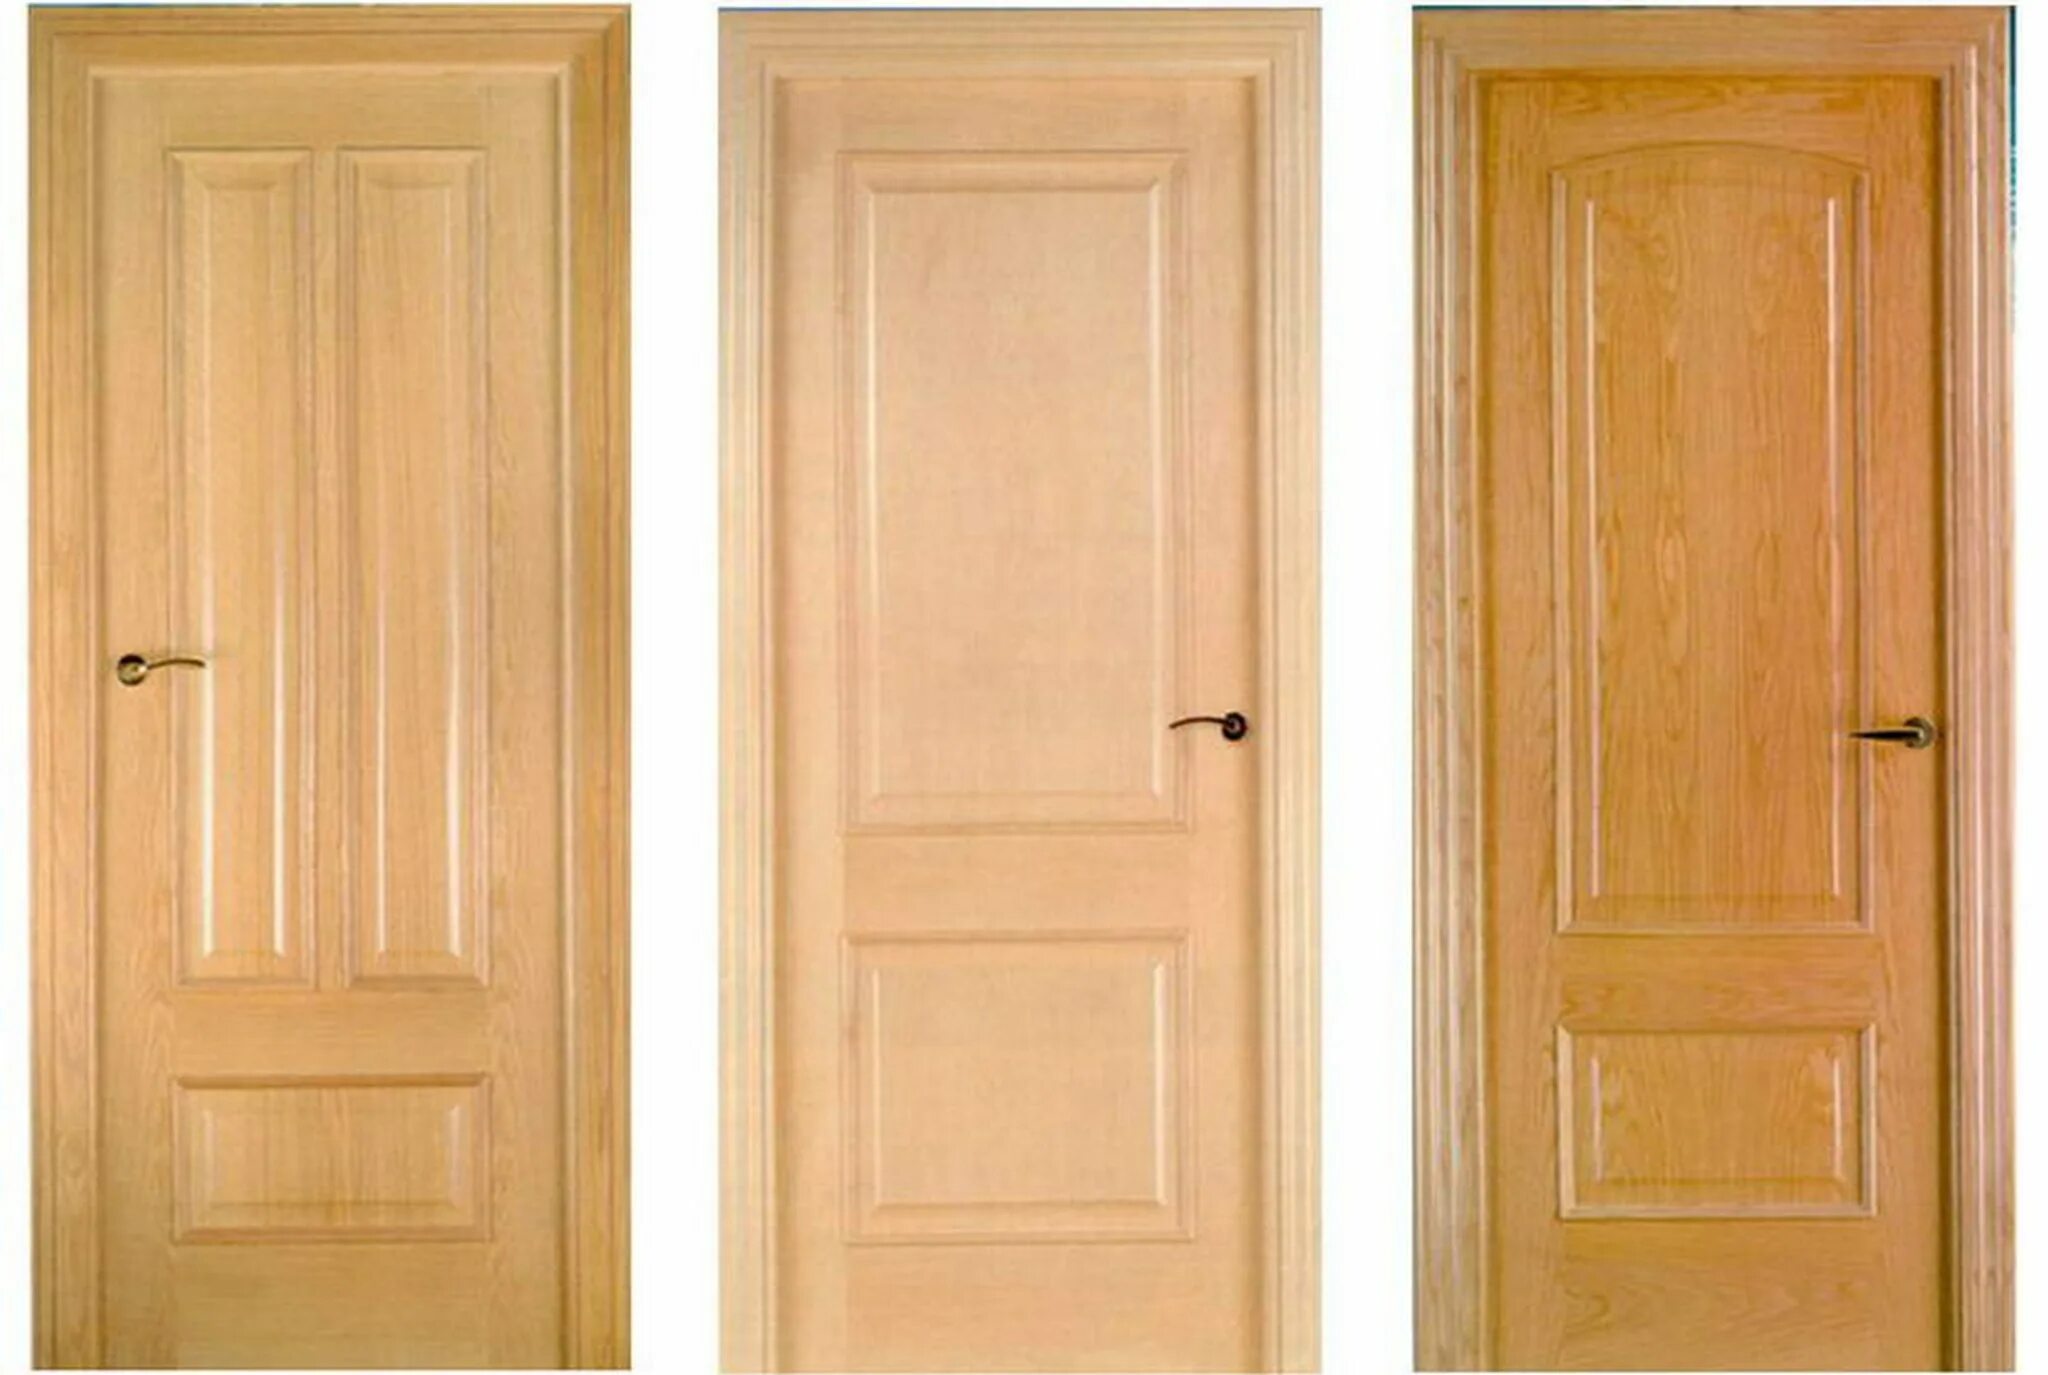 Двери входные деревянные филенчатые. Деревянные двери межкомнатные. Двери межкомнатные филенчатые. Массивная деревянная дверь. Куплю старые межкомнатные двери